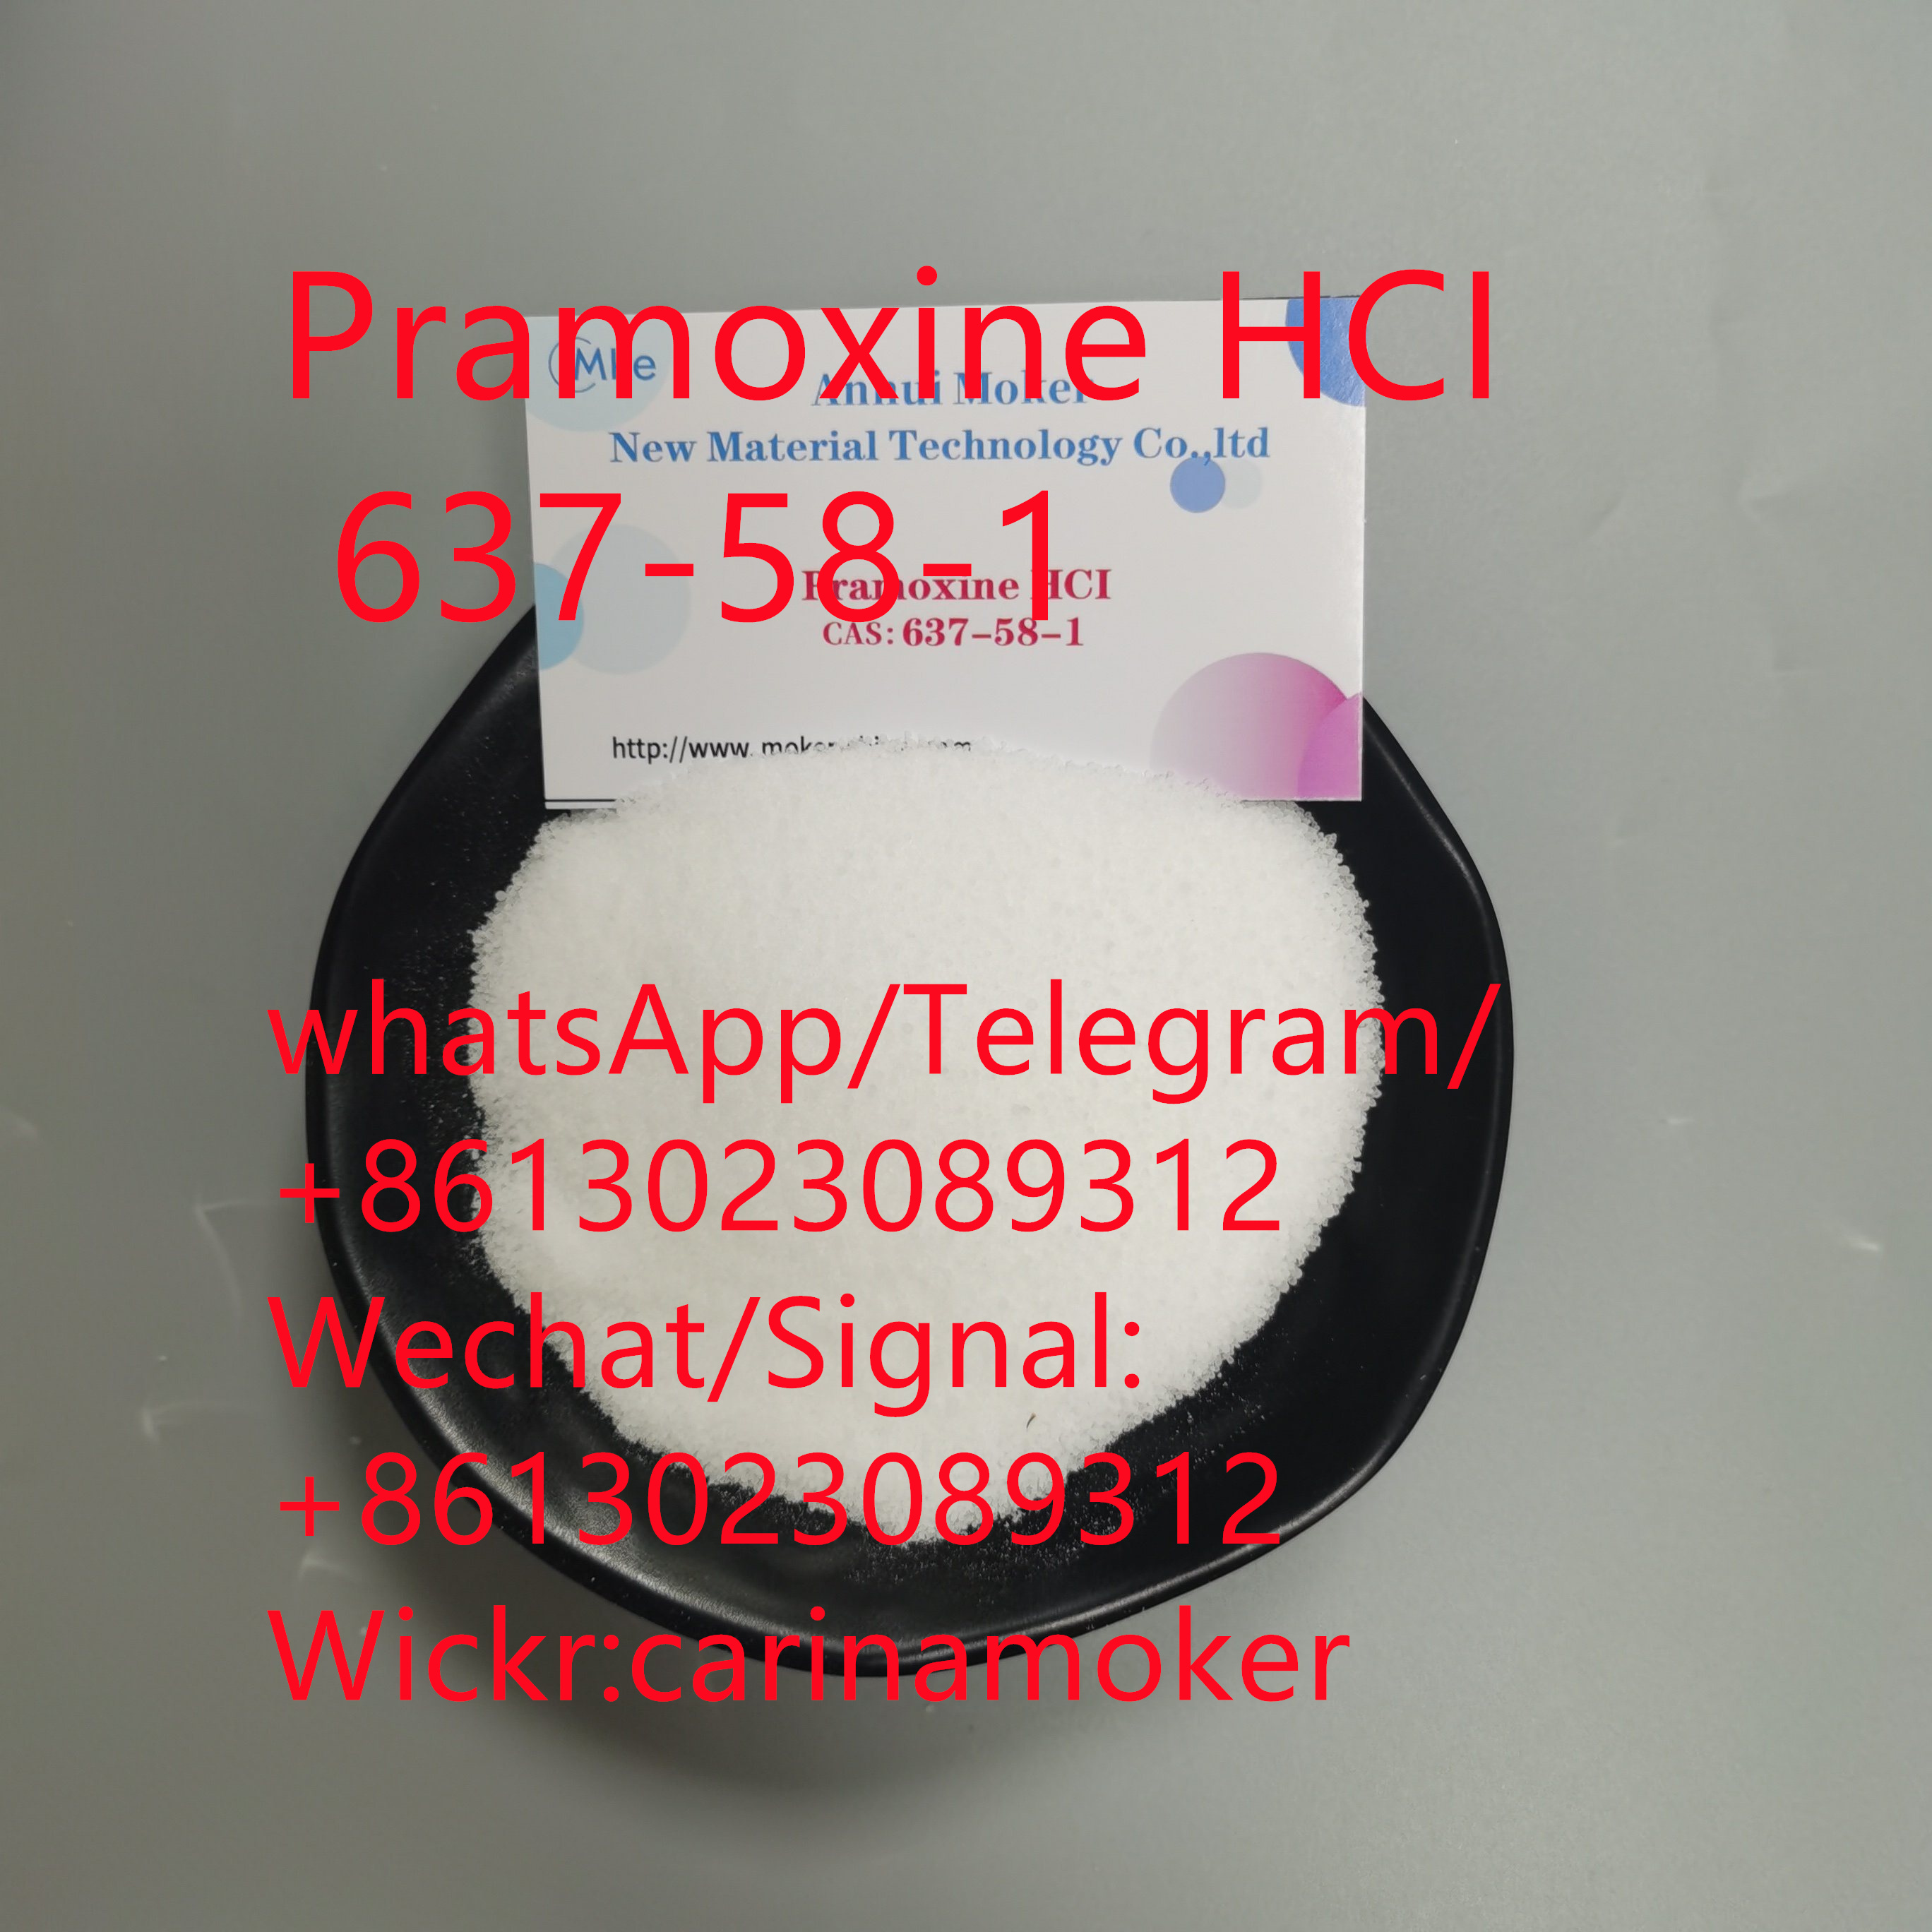 High Quanlity Proparacaine HCI 5875-06-9 